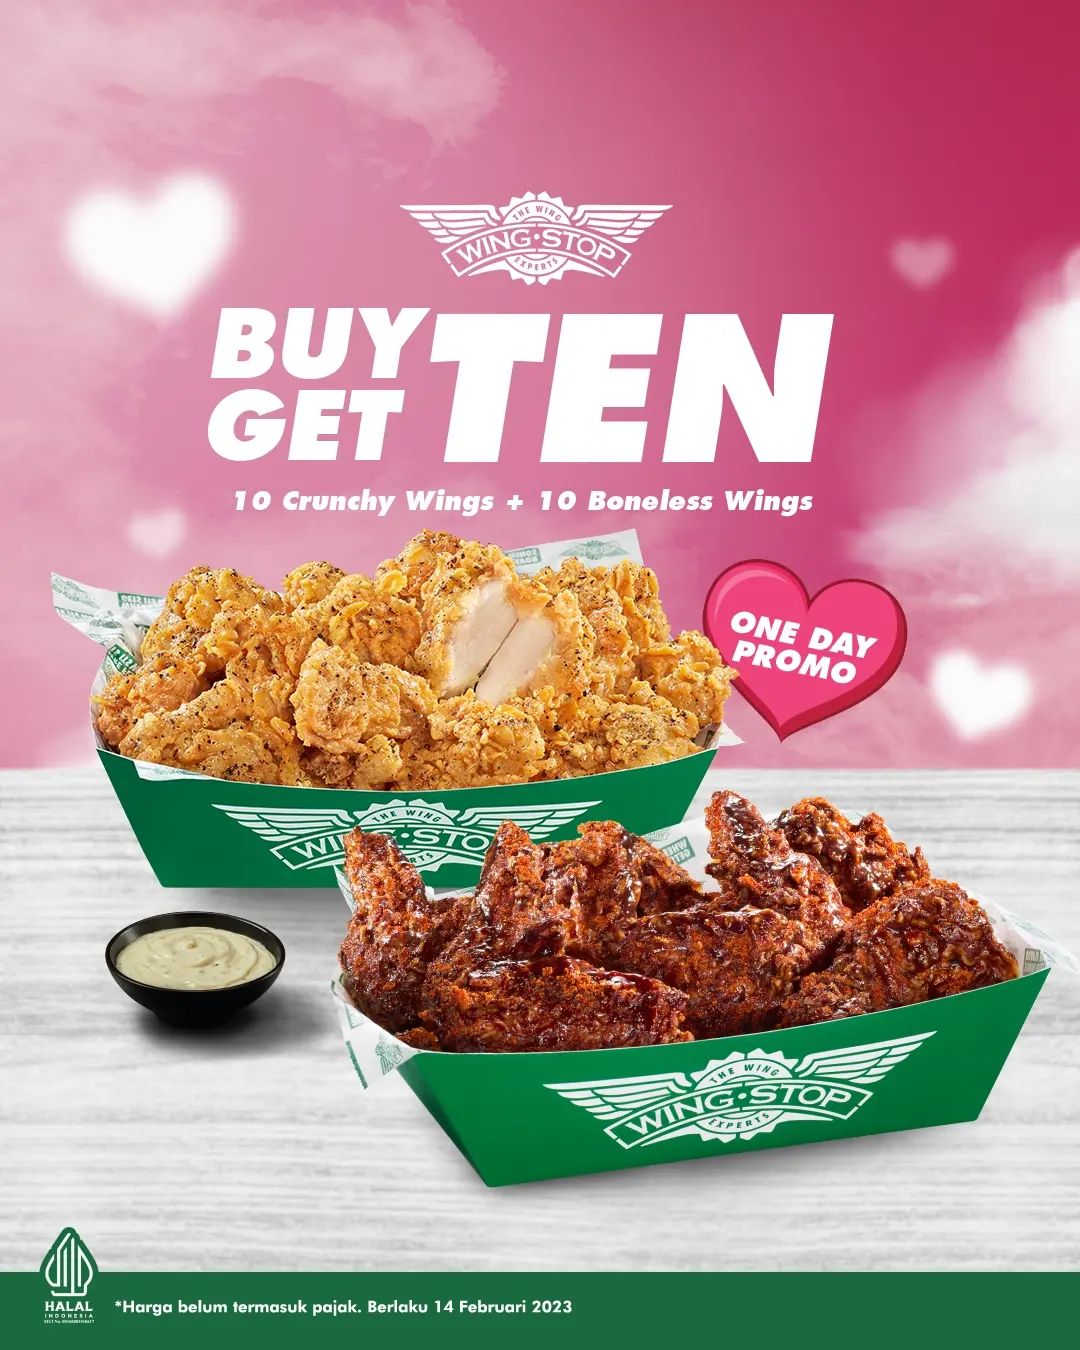 Promo WINGSTOP Spesial Valentine - Buy 10 Crunchy Wings Get FREE 10 Boneless Wings